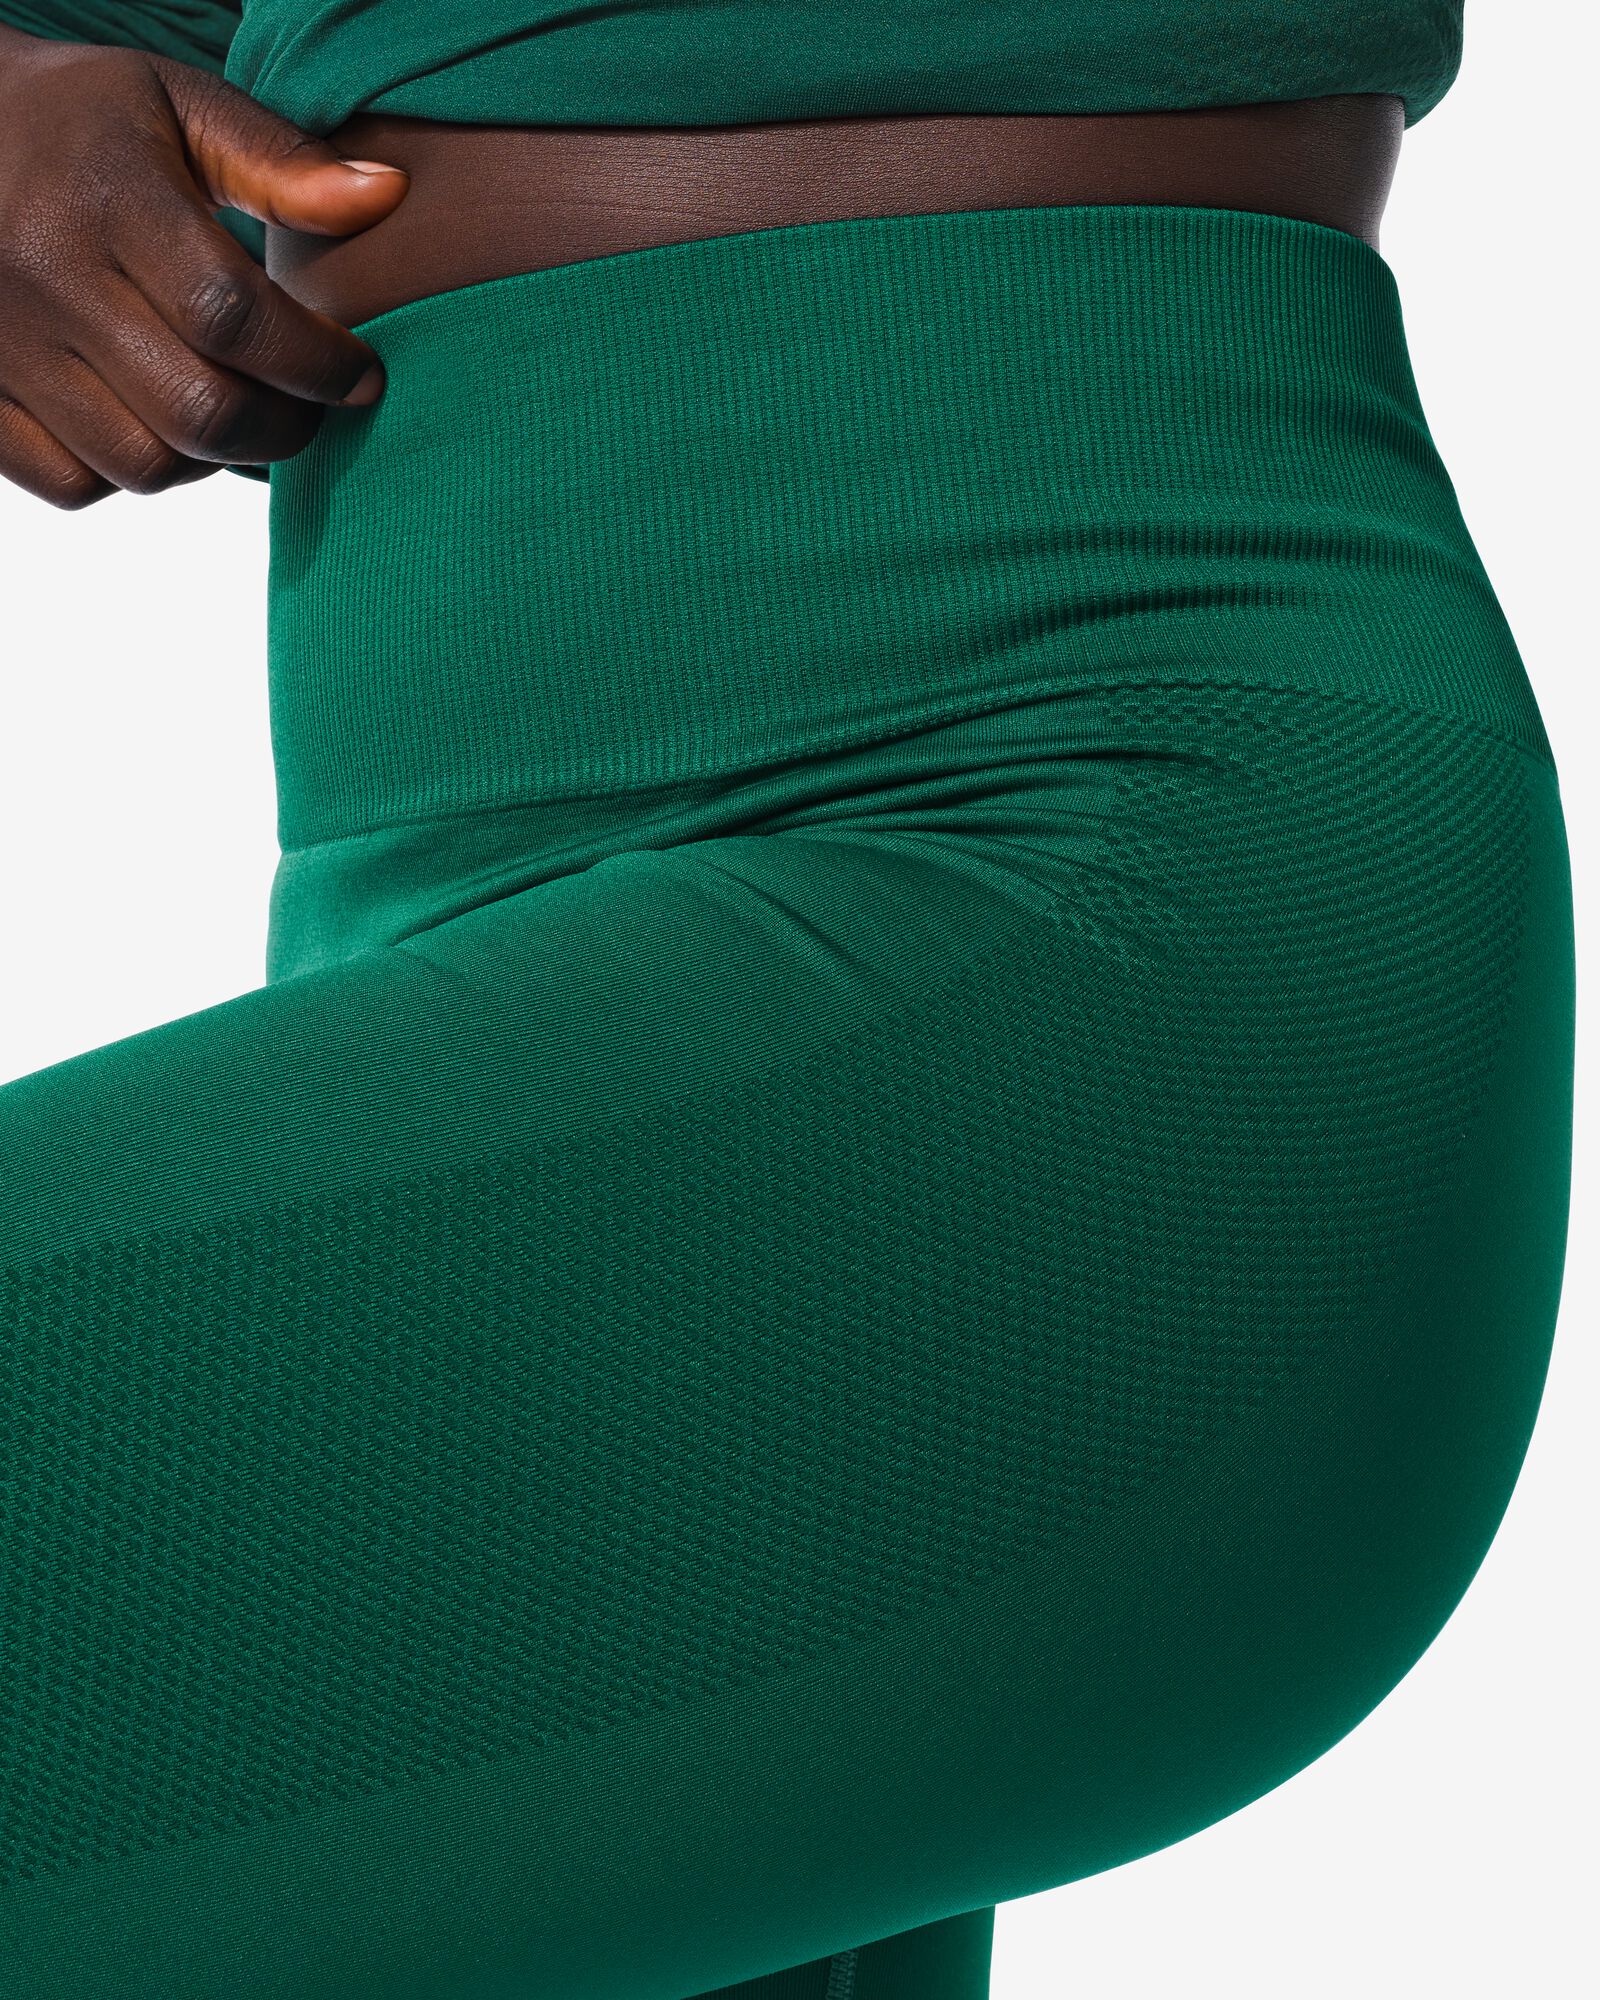 Damen-Sportshirt, nahtlos dunkelgrün dunkelgrün - 36090128DARKGREEN - HEMA